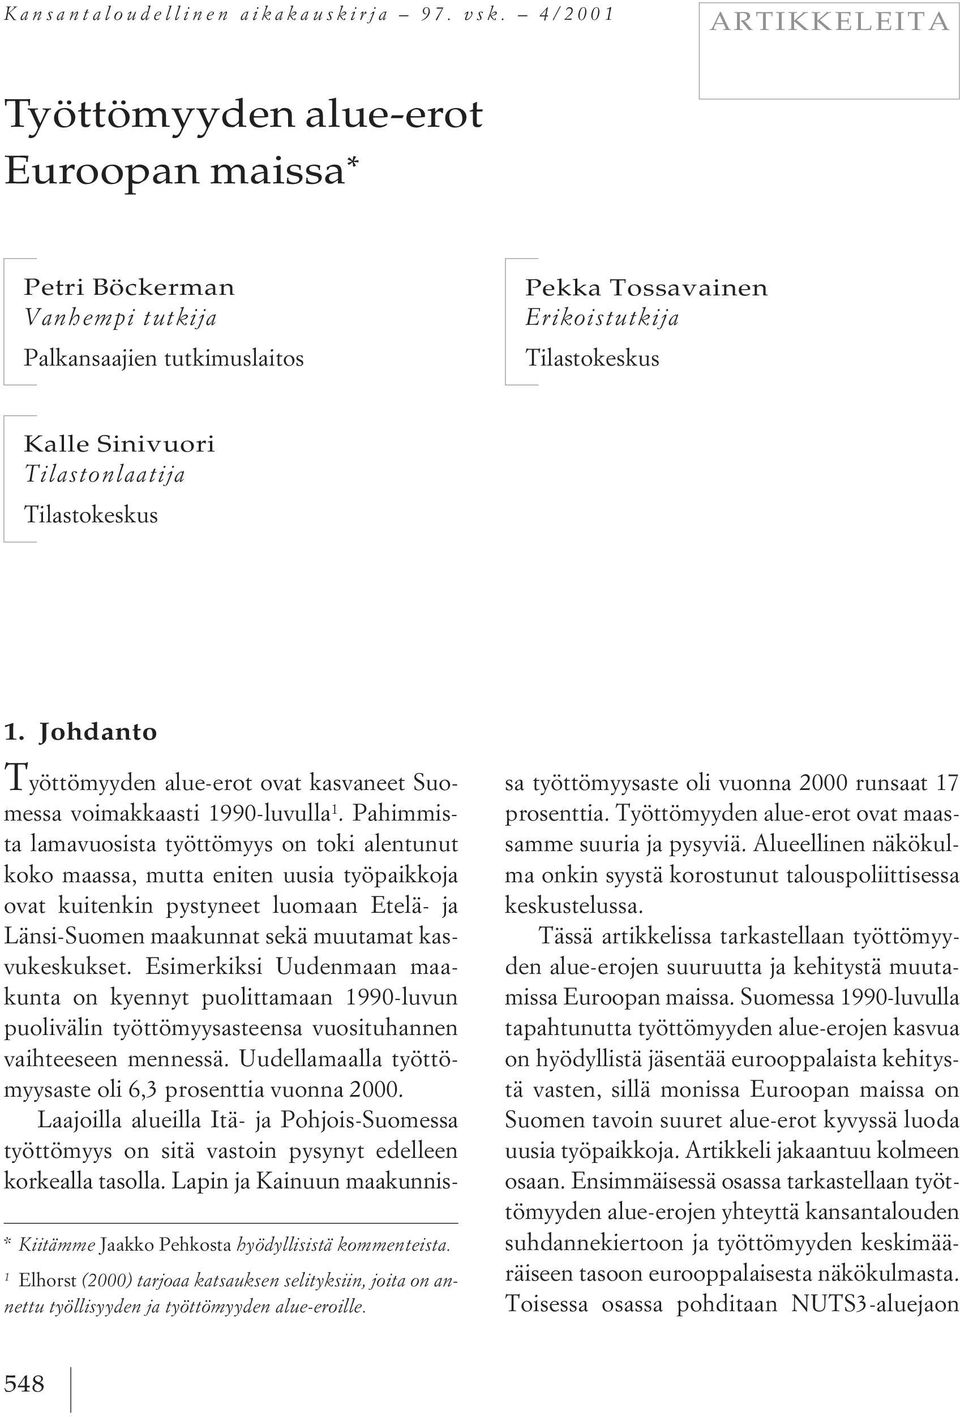 Tilastonlaatija Tilastokeskus * Kiitämme Jaakko Pehkosta hyödyllisistä kommenteista. 1 Elhorst (2000) tarjoaa katsauksen selityksiin, joita on annettu työllisyyden ja työttömyyden alue-eroille. 1. Johdanto T yöttömyyden alue-erot ovat kasvaneet Suomessa voimakkaasti 1990-luvulla 1.